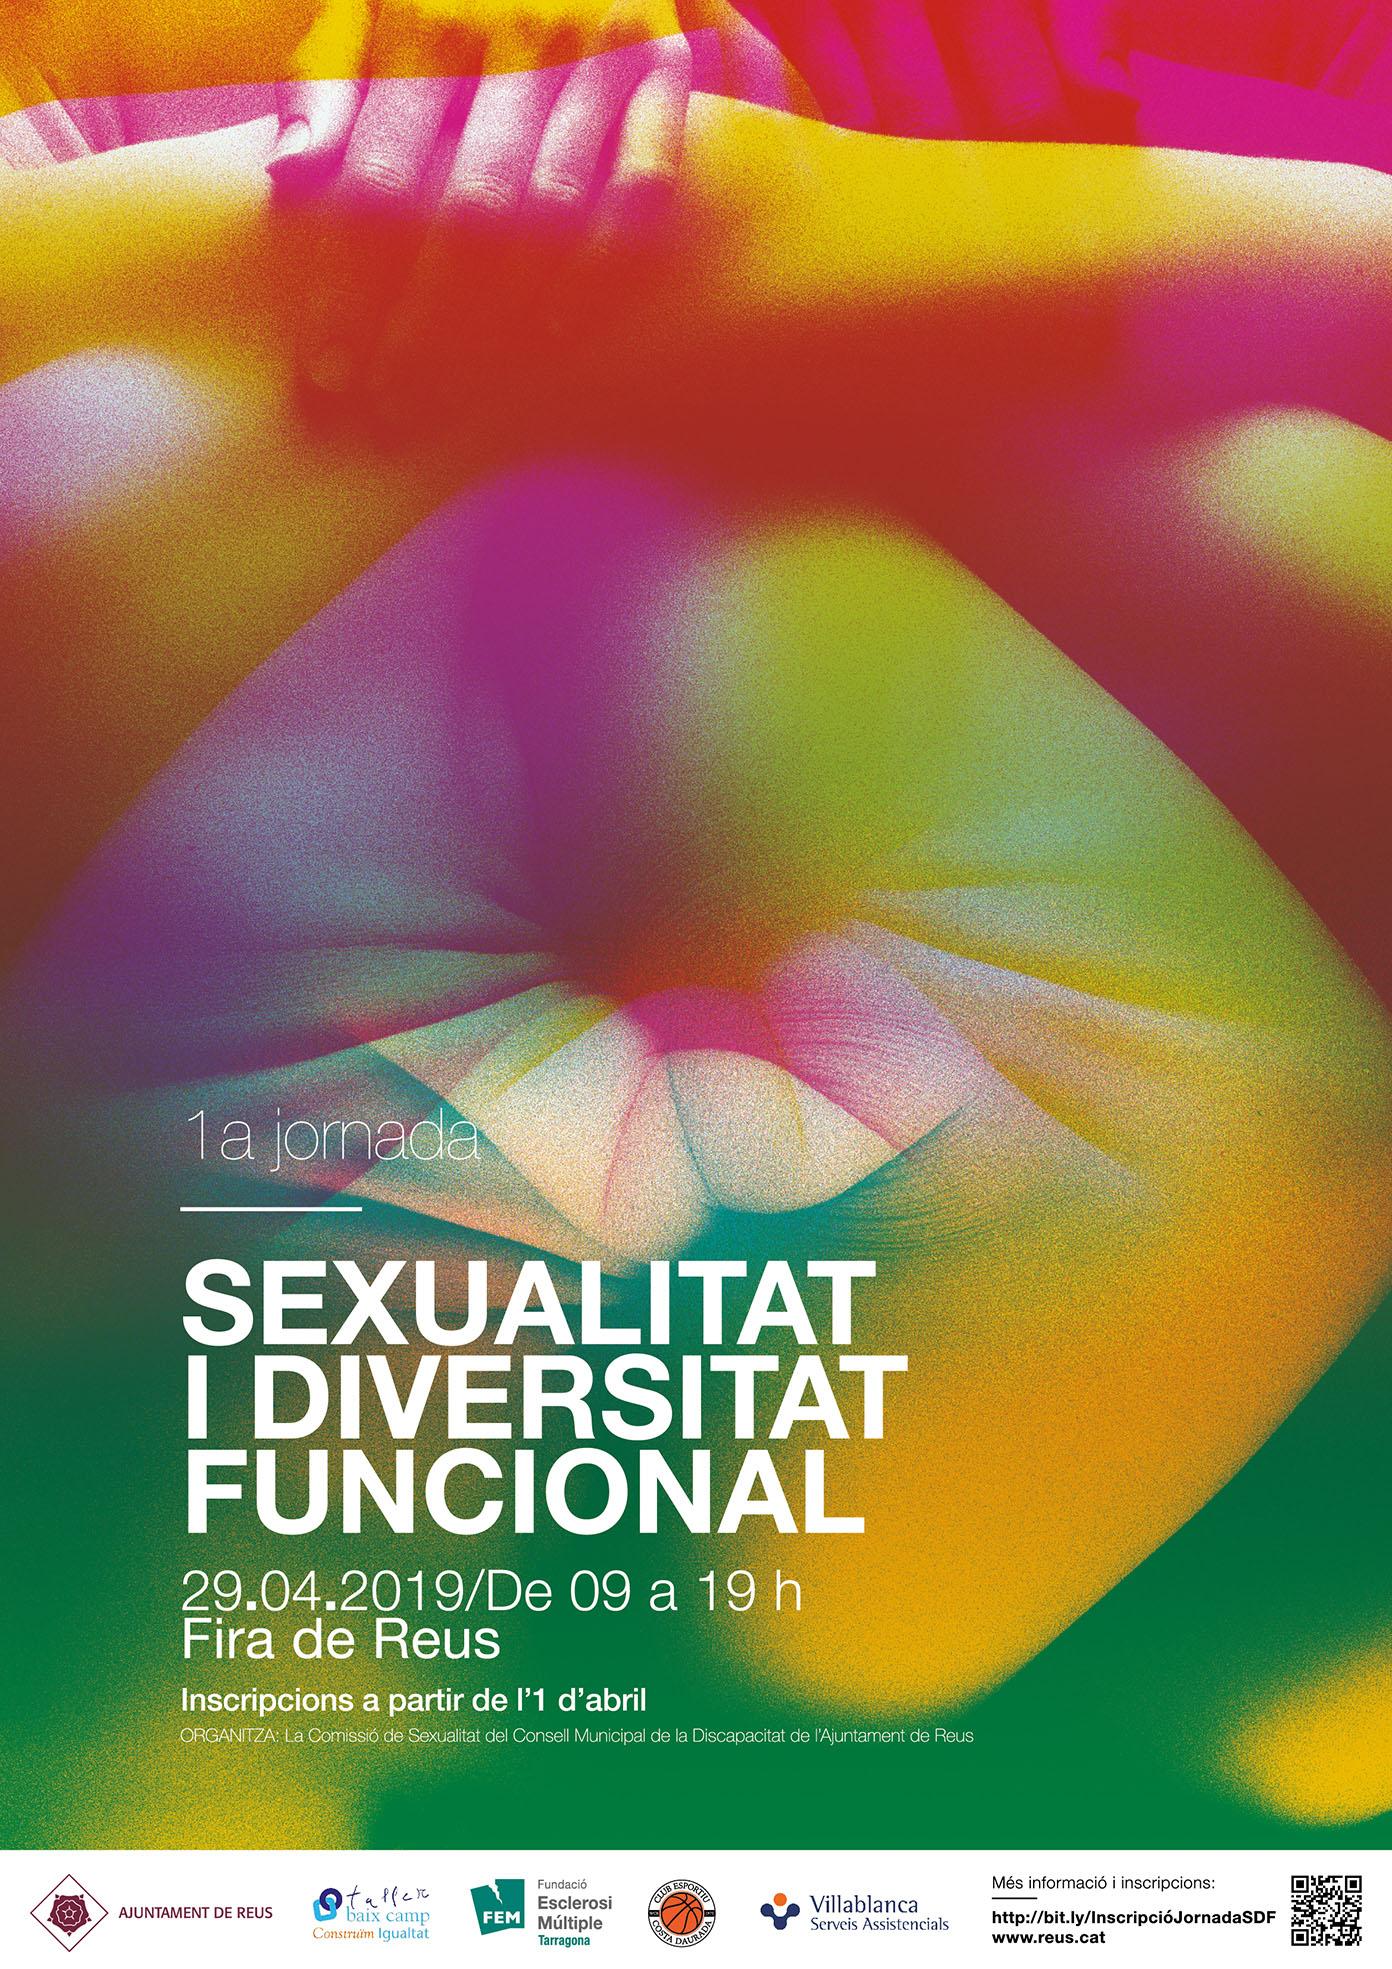 Jornada sexualitat i diversitat funcional